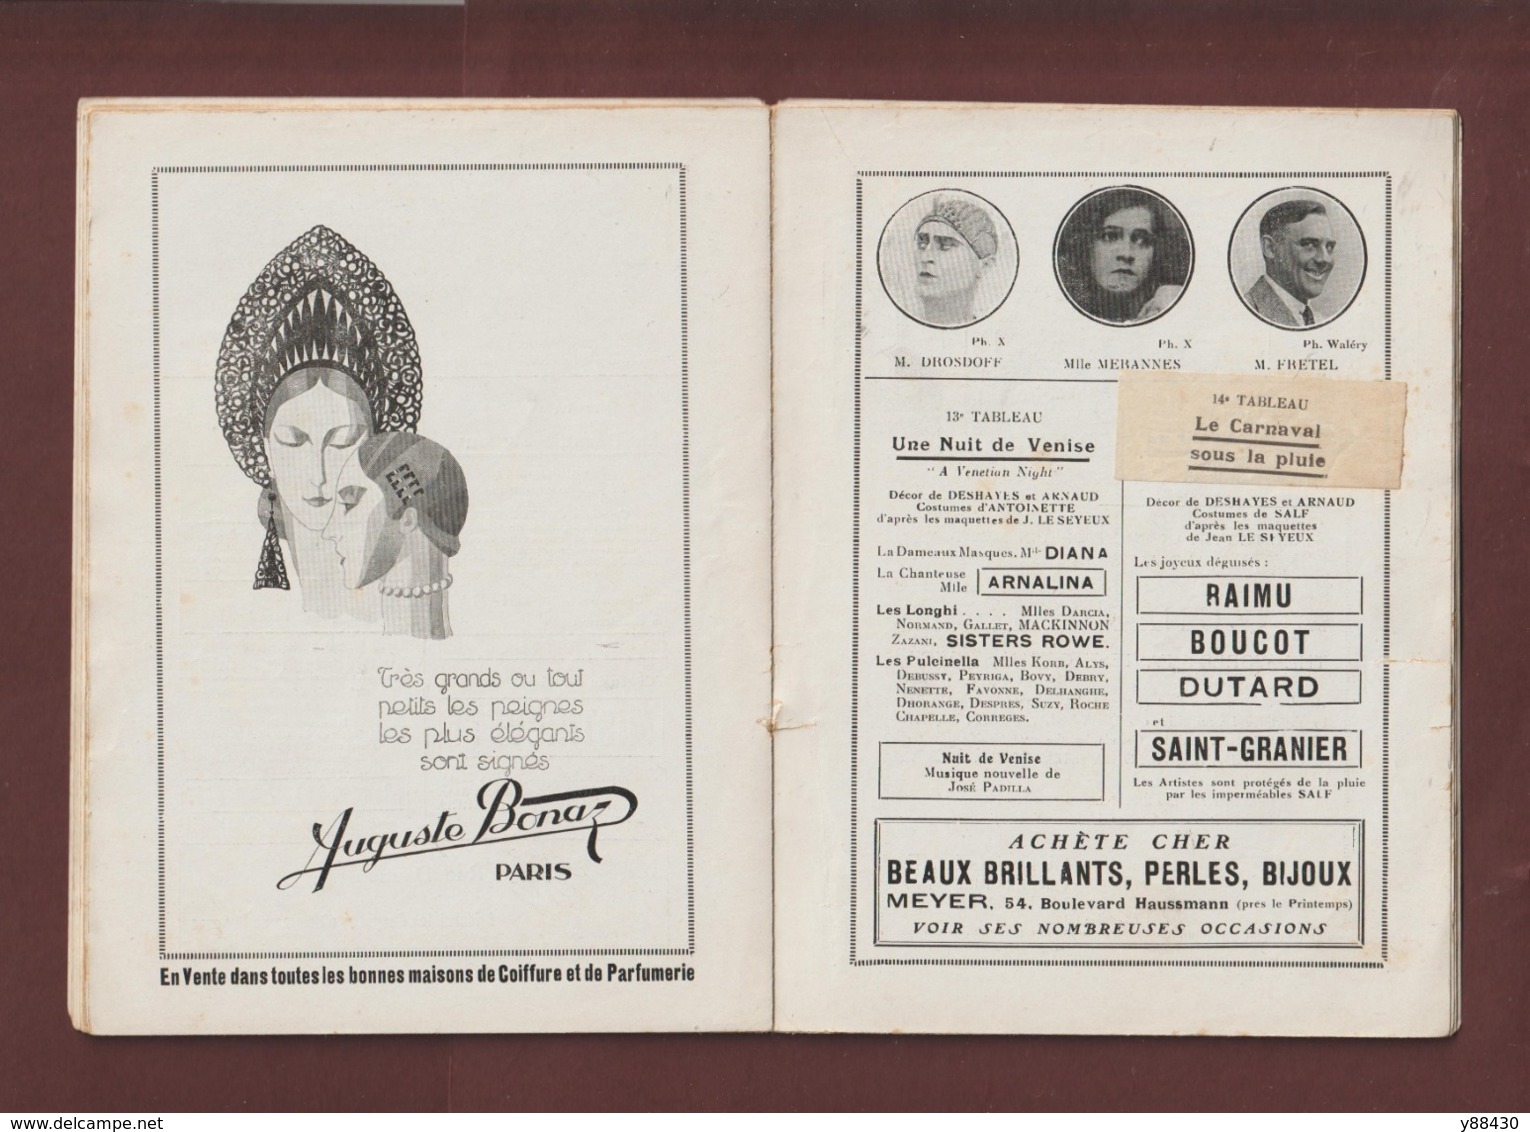 CASINO DE PARIS . Programme Revue saison 1924/1925 - Affiche de Charles Gesmar - Très belles PUB - 52 pages - 28 photos